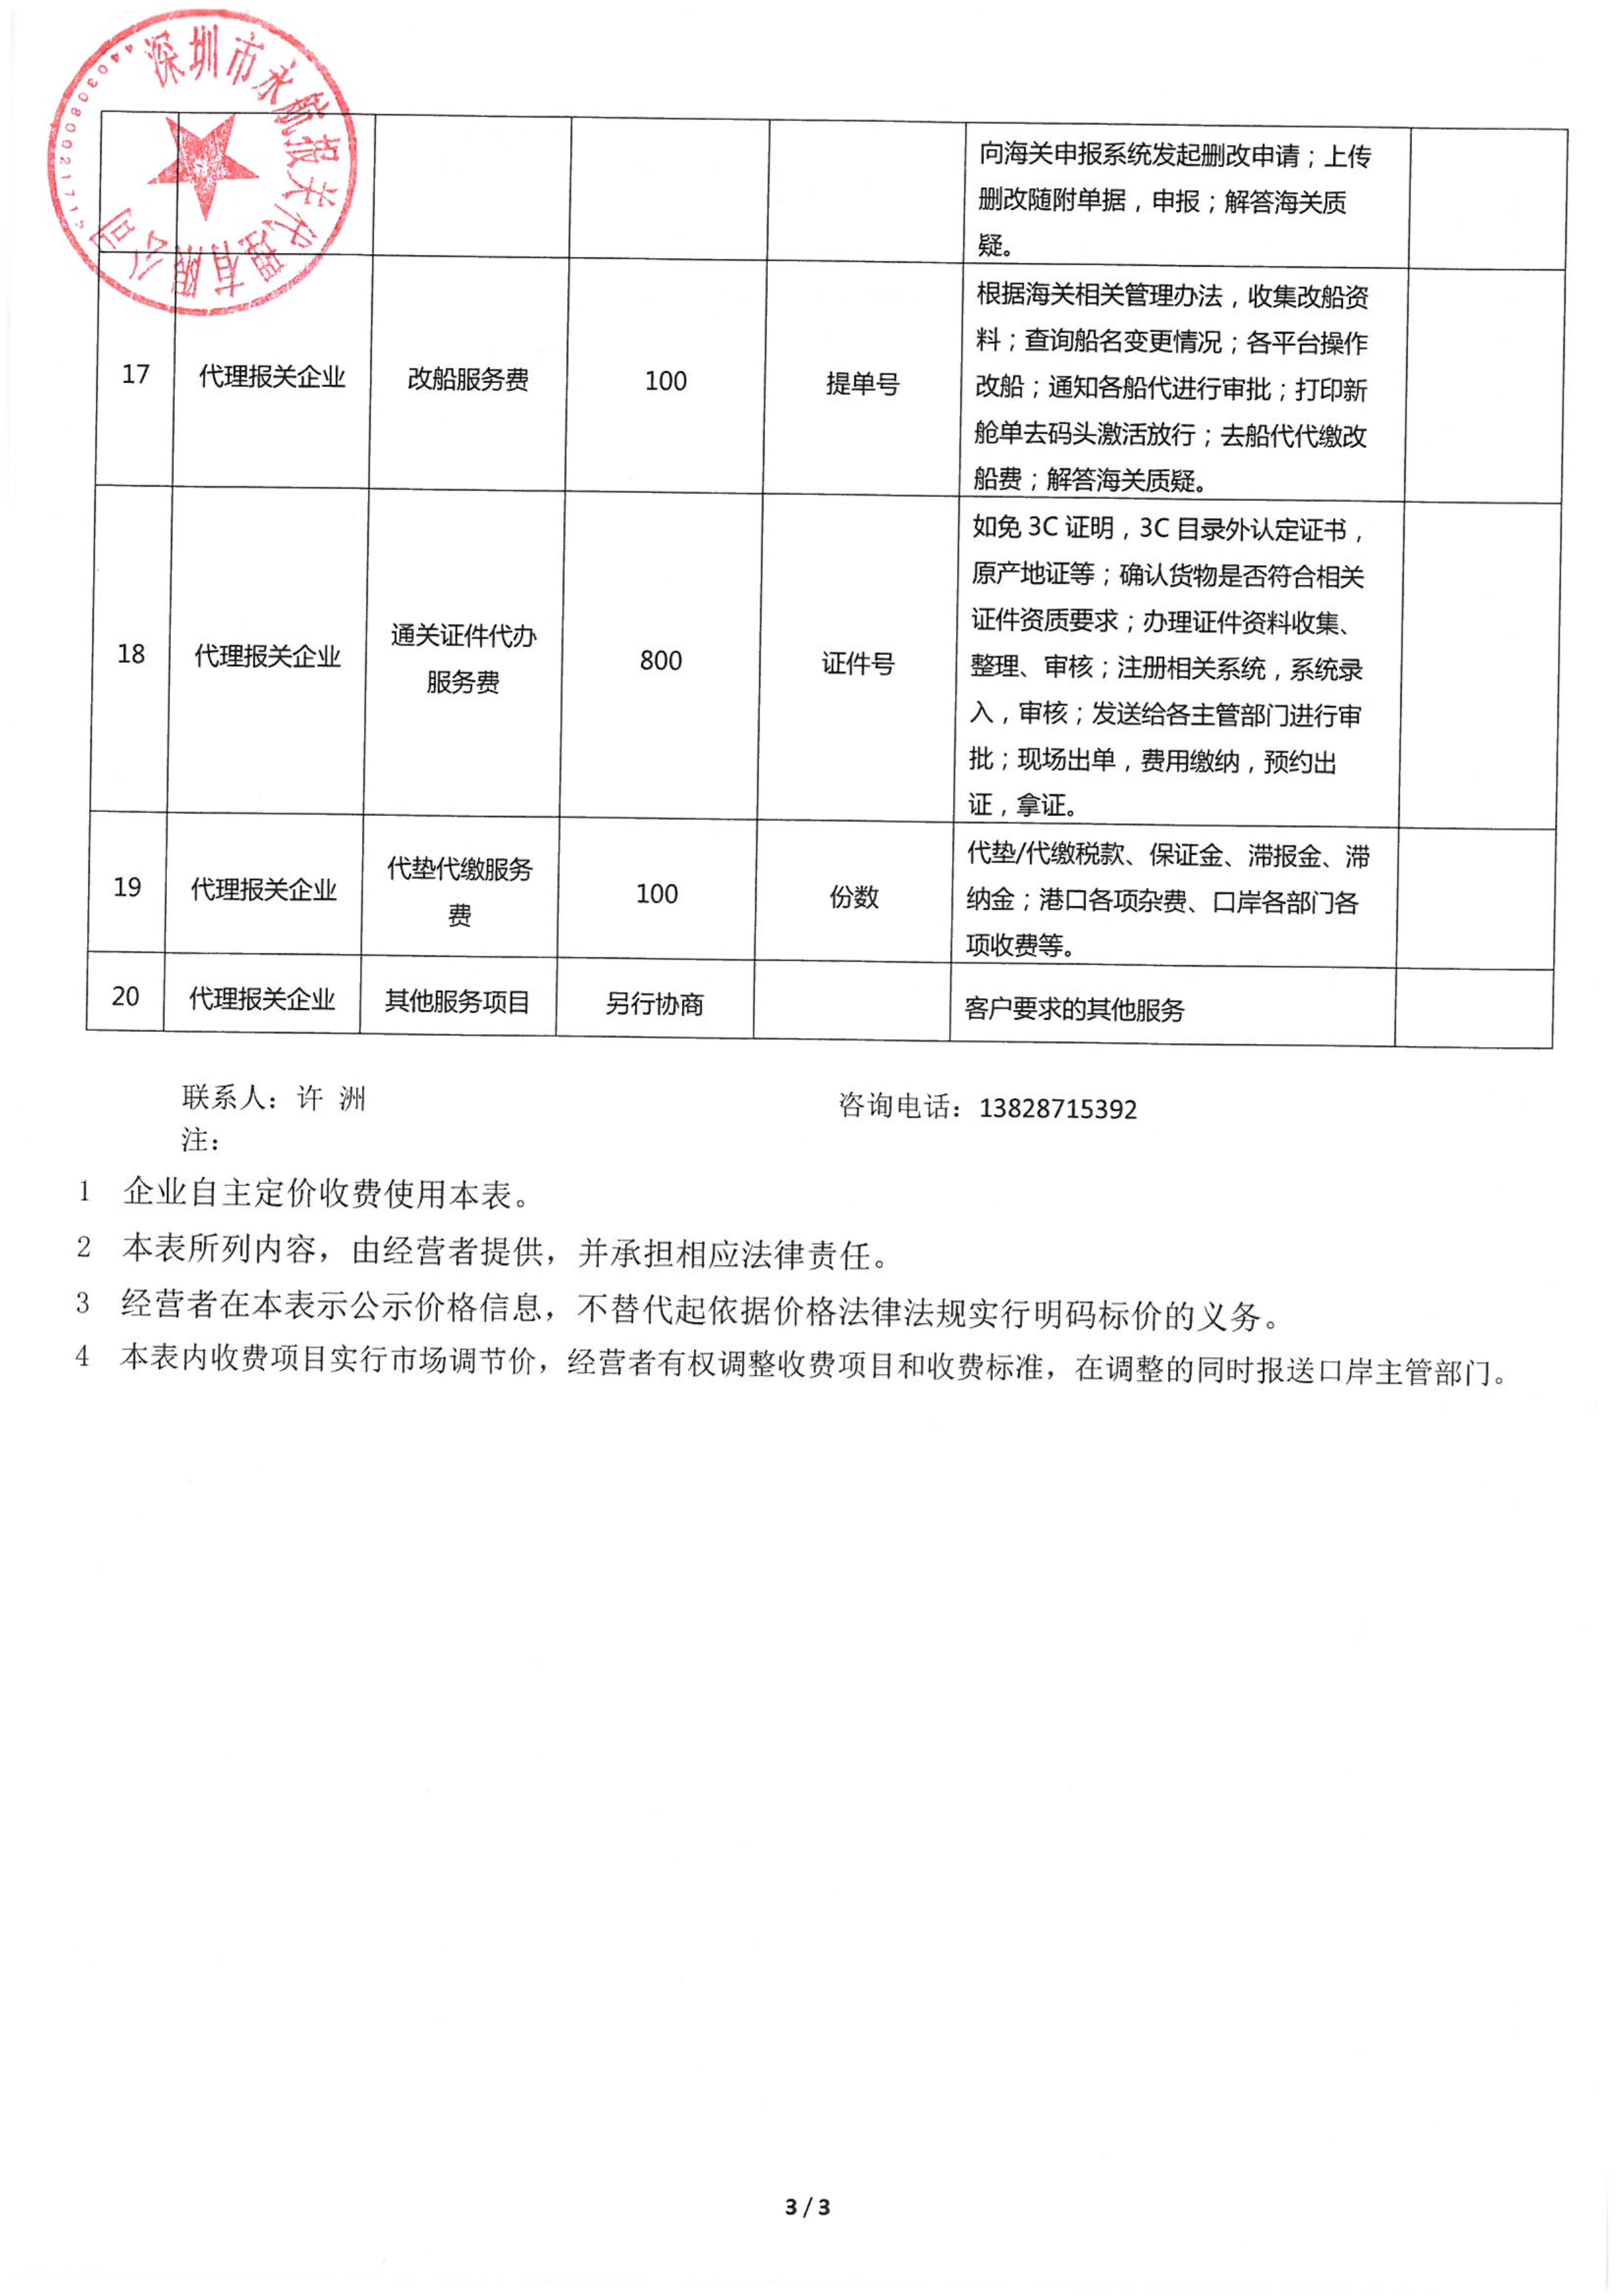 深圳市永航报关服务有限公司收费目录清单_3.jpg